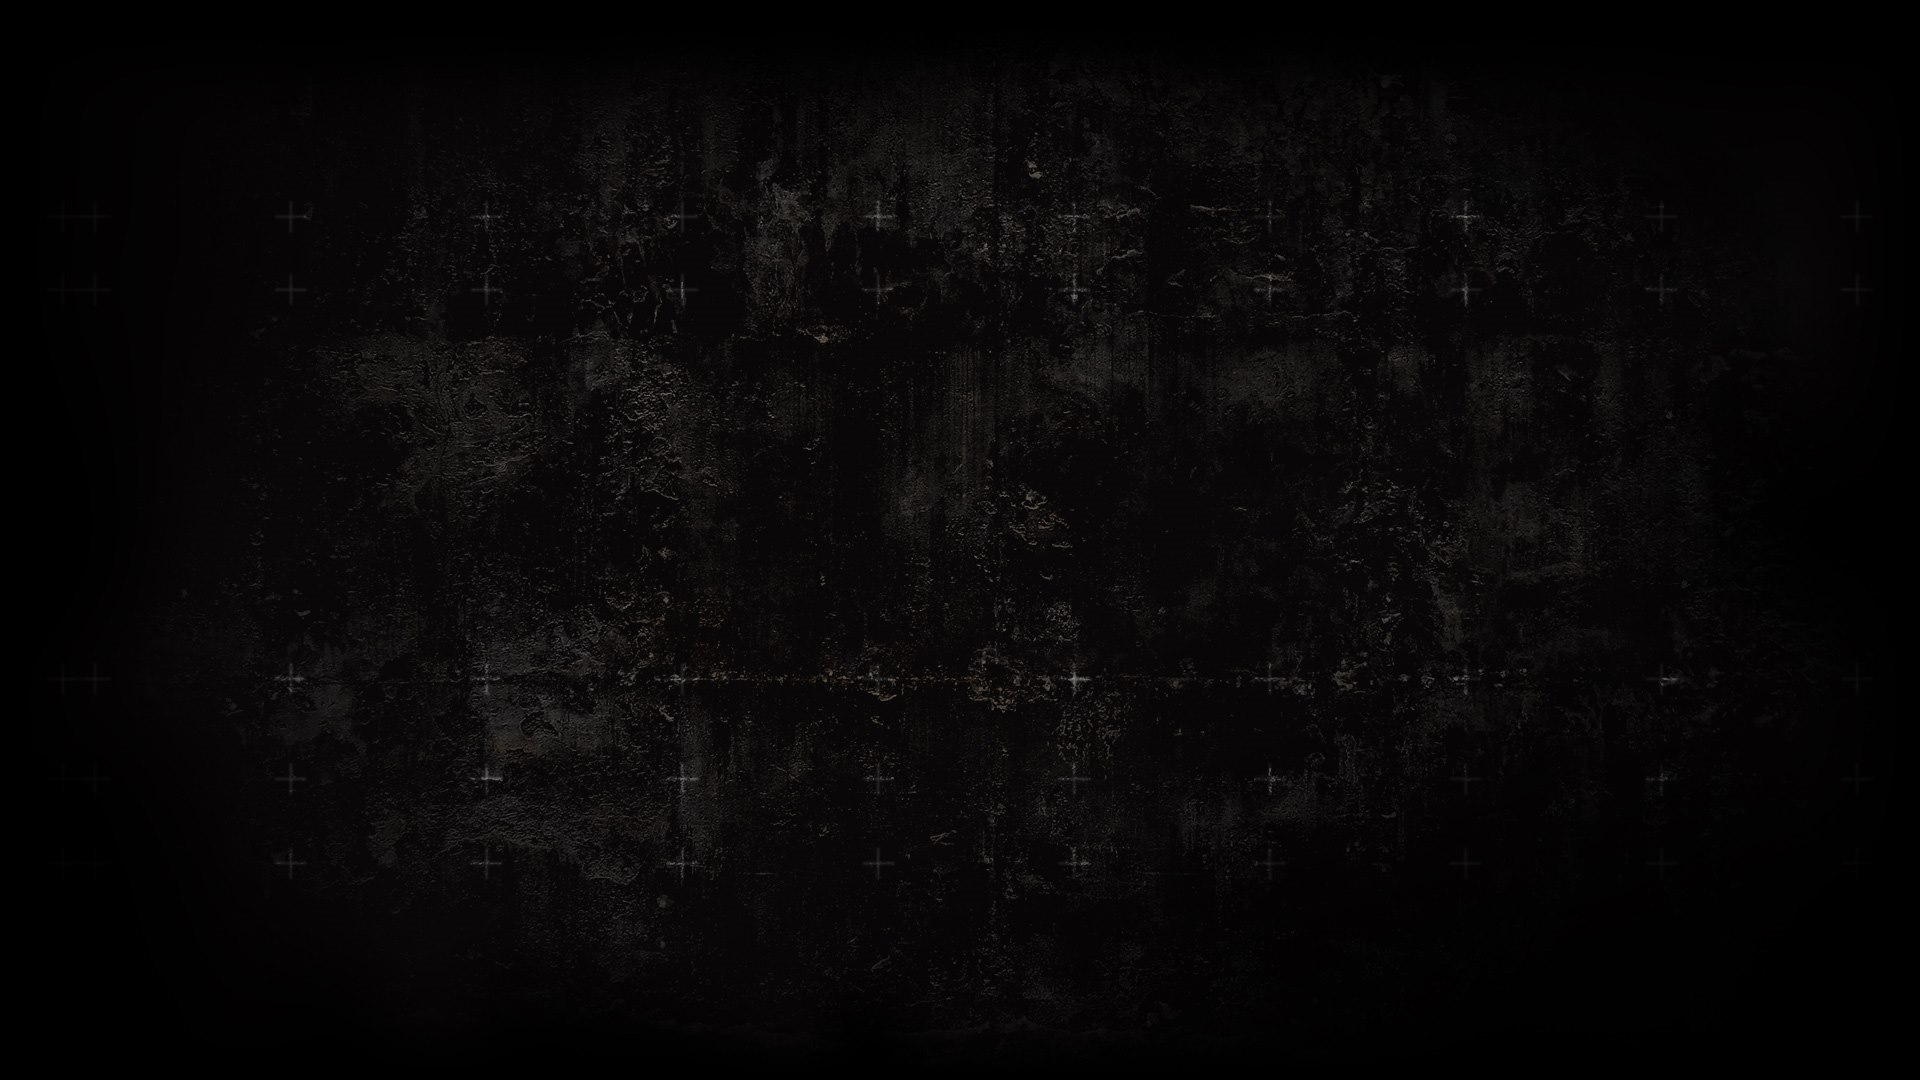 dark wall background